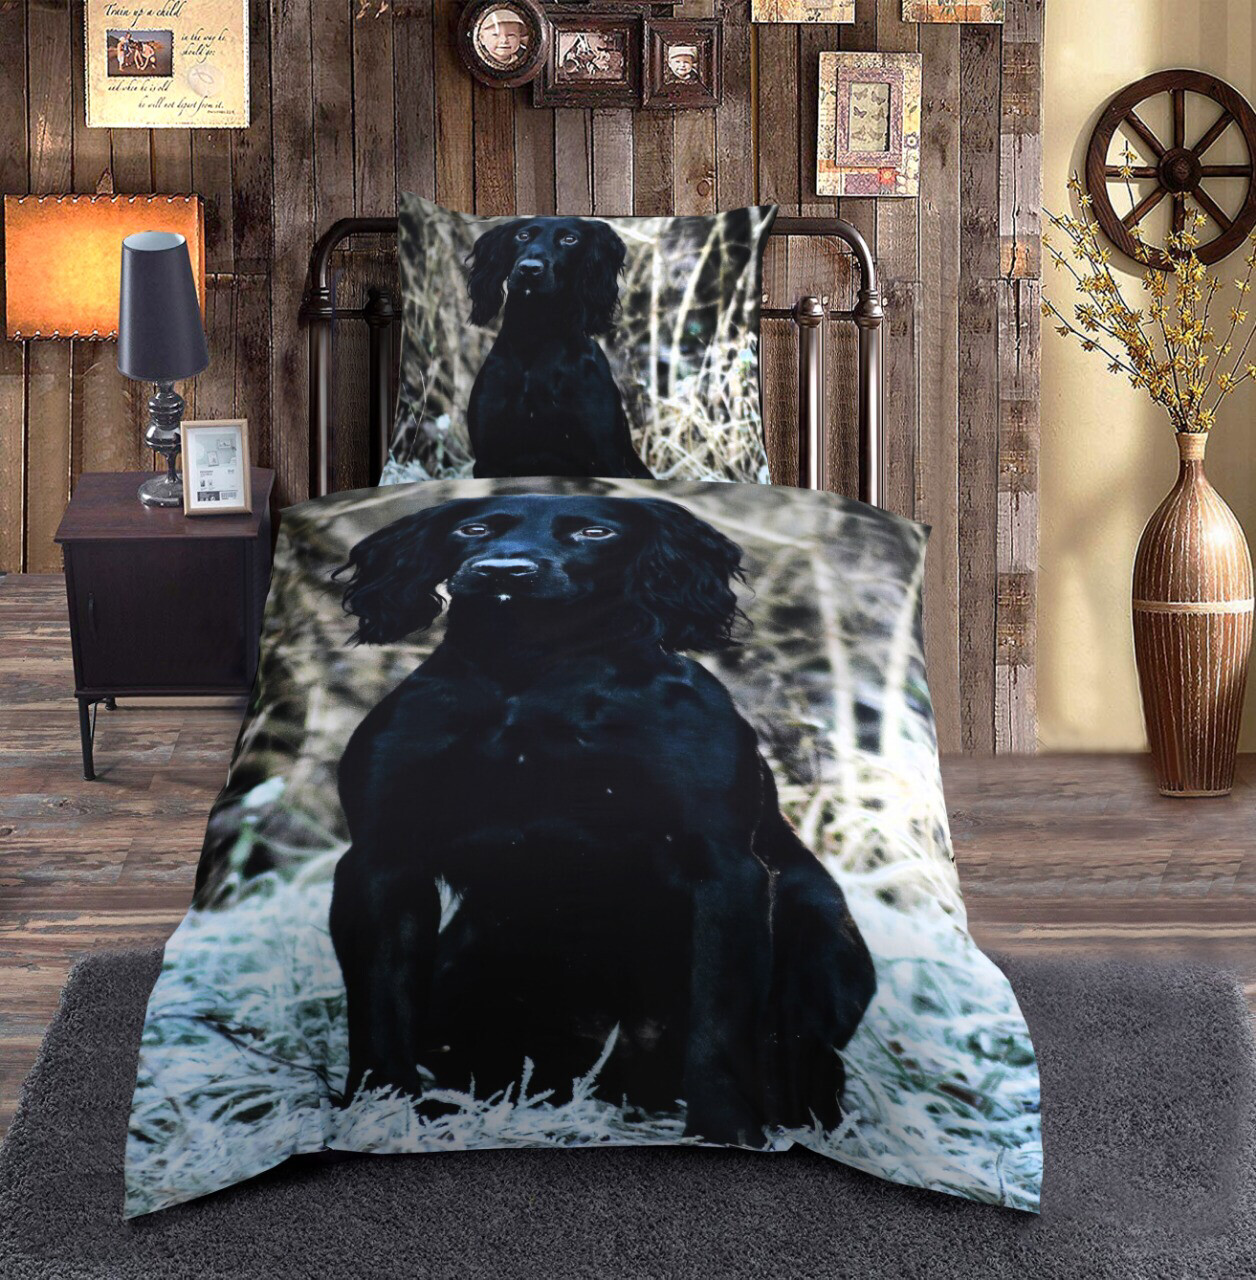 Sengetøj - Køb det fedeste sengetøj med jagt og natur print her! | De  vildeste ting til jægeren, hjemmet og familien